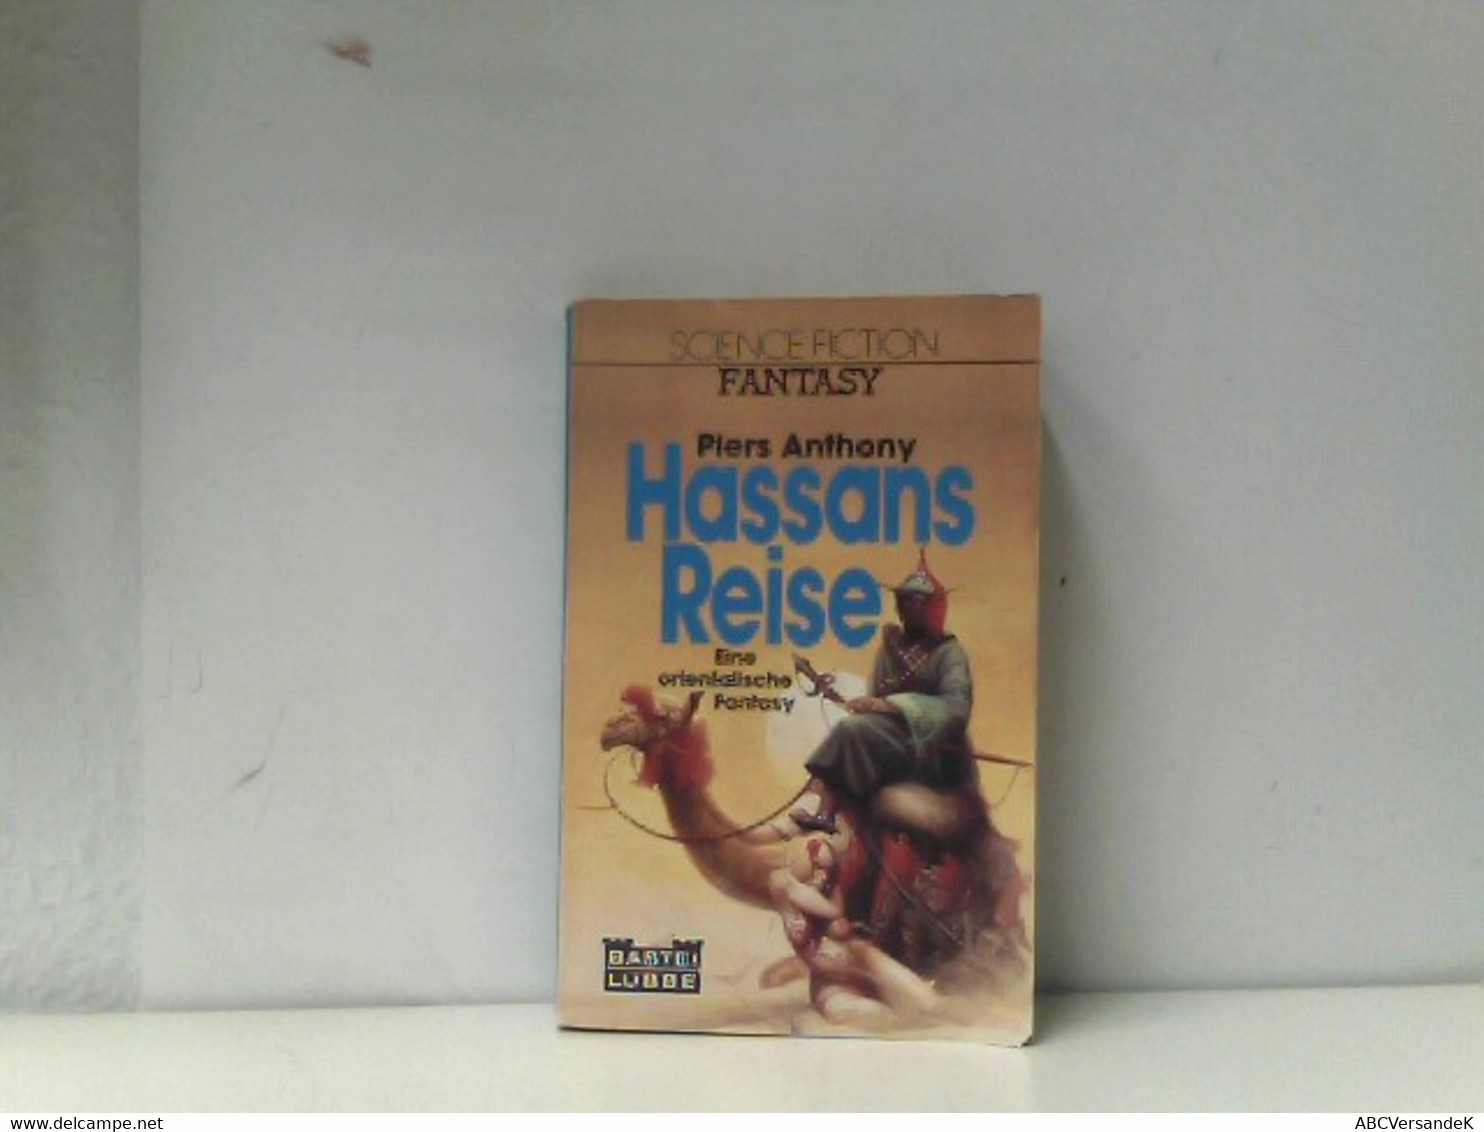 Hassans Reise ; Fantasy-Roman / [Eine Orientalische Fantasy] - Sciencefiction